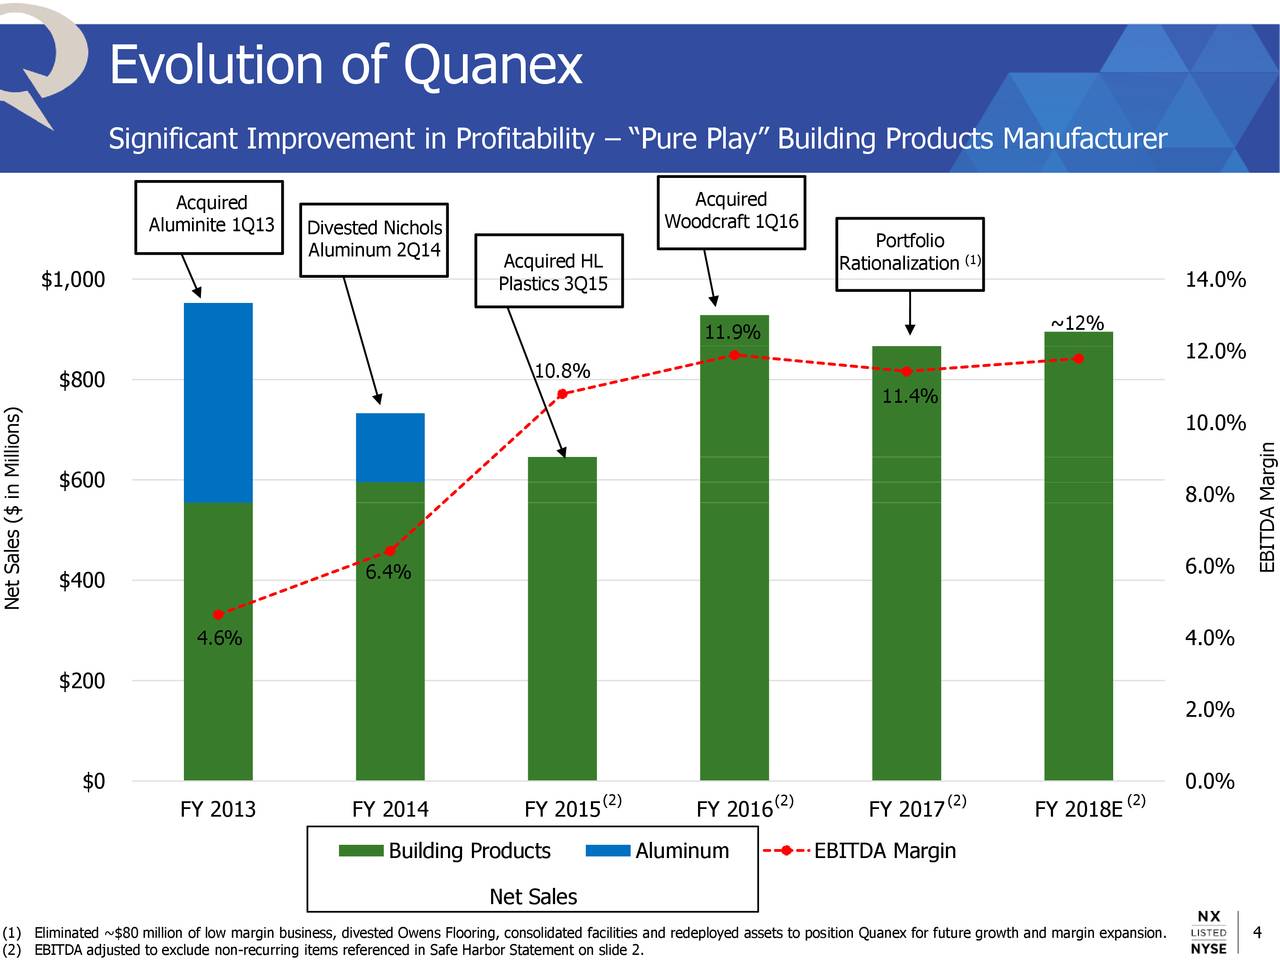 Evolution of Quanex